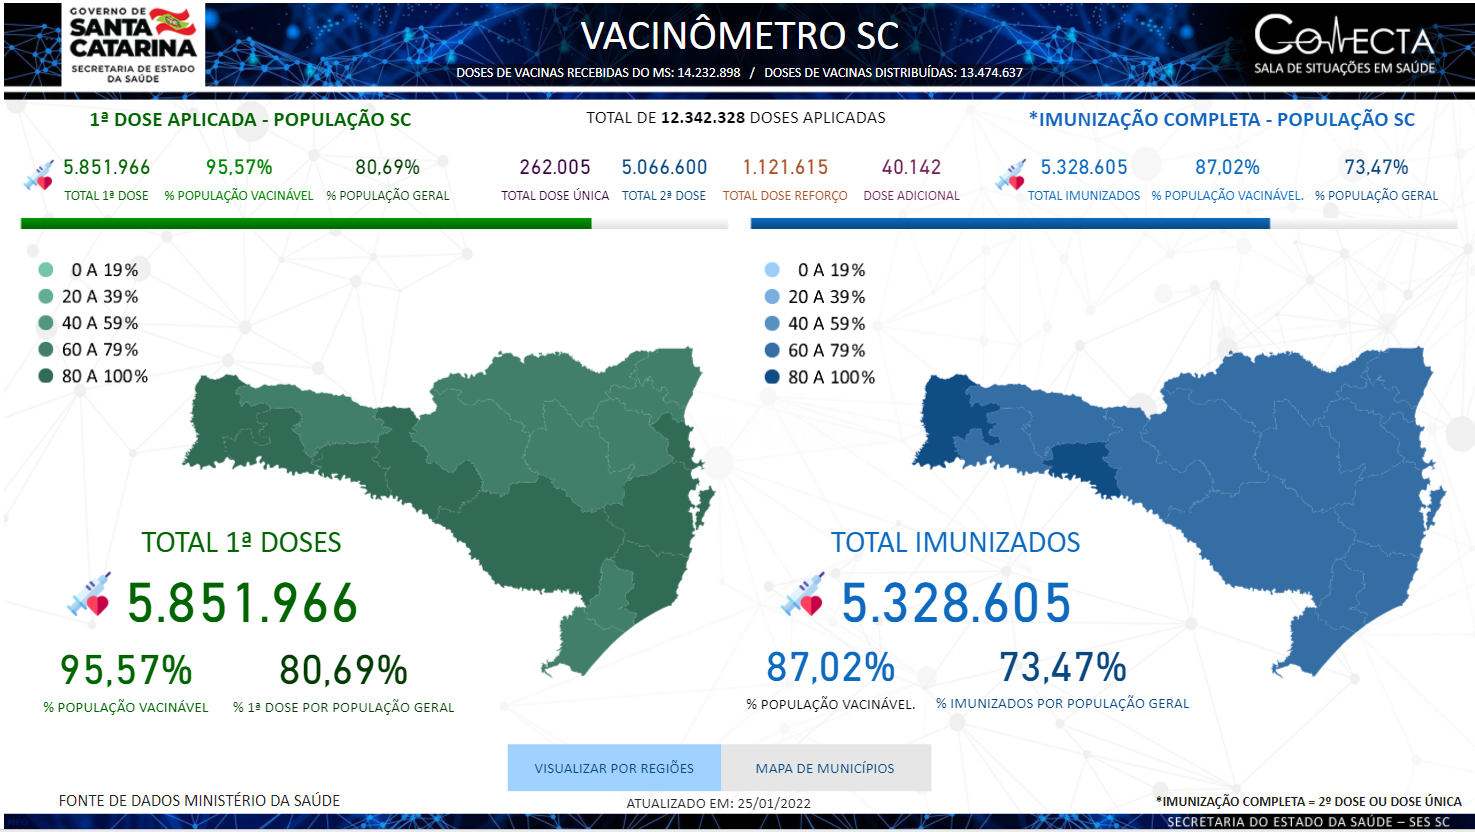 Dados da vacinação em Santa Catarina em 25 de janeiro de 2022. Fonte: https://www.redvacinometro.saude.sc.gov.br/